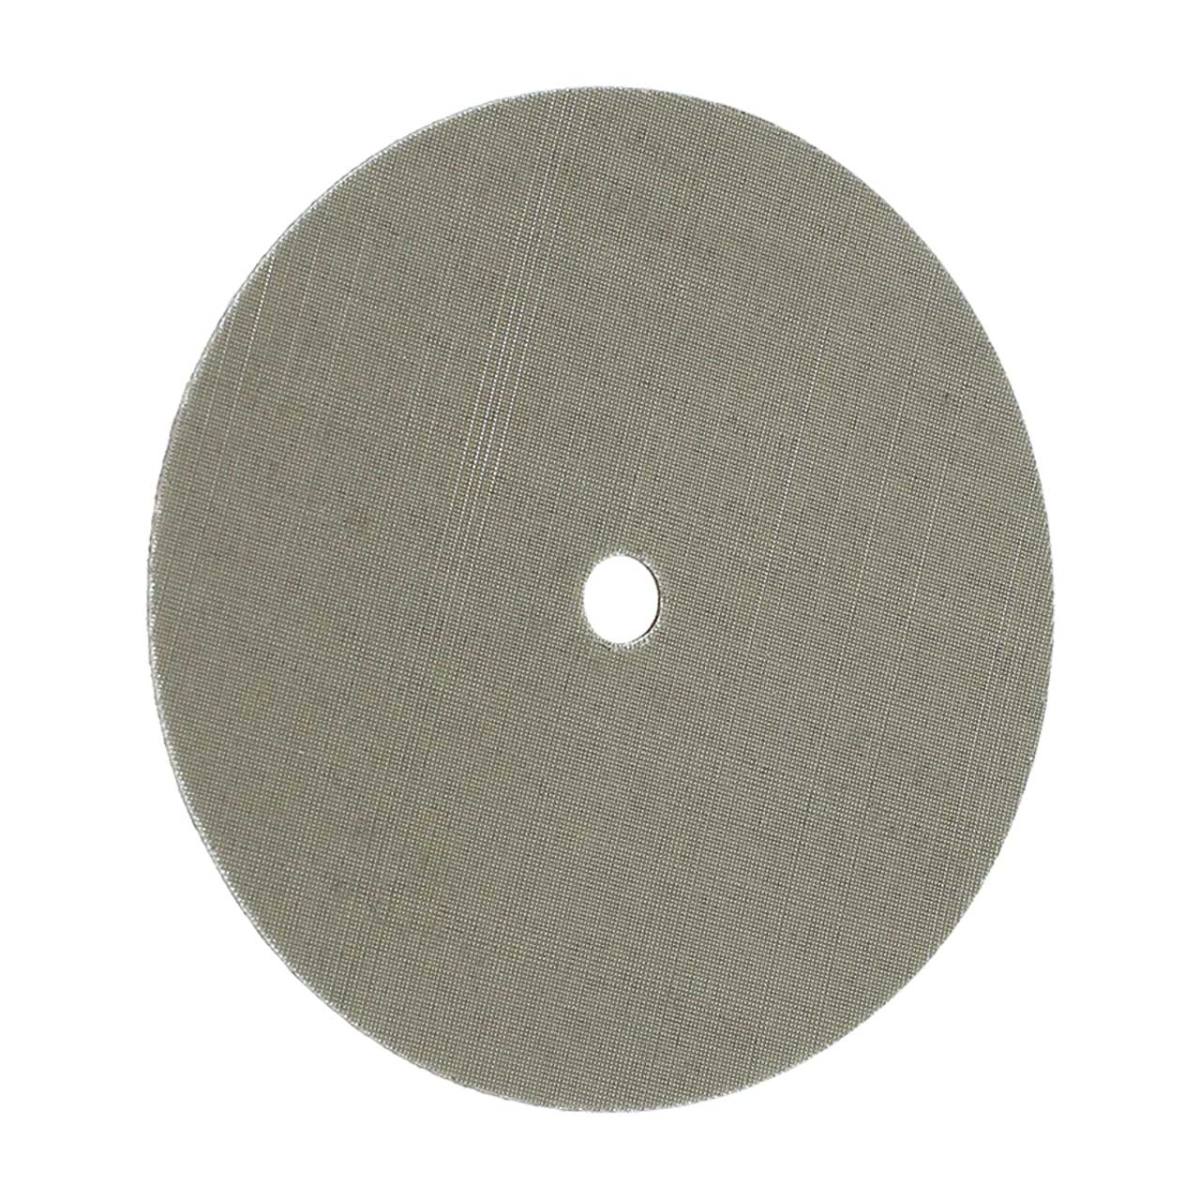 FIX KLETT Trizact-levy, 115 mm x 10 mm, jyvä 2 000 / A 06, koukkukiinnitysnauha